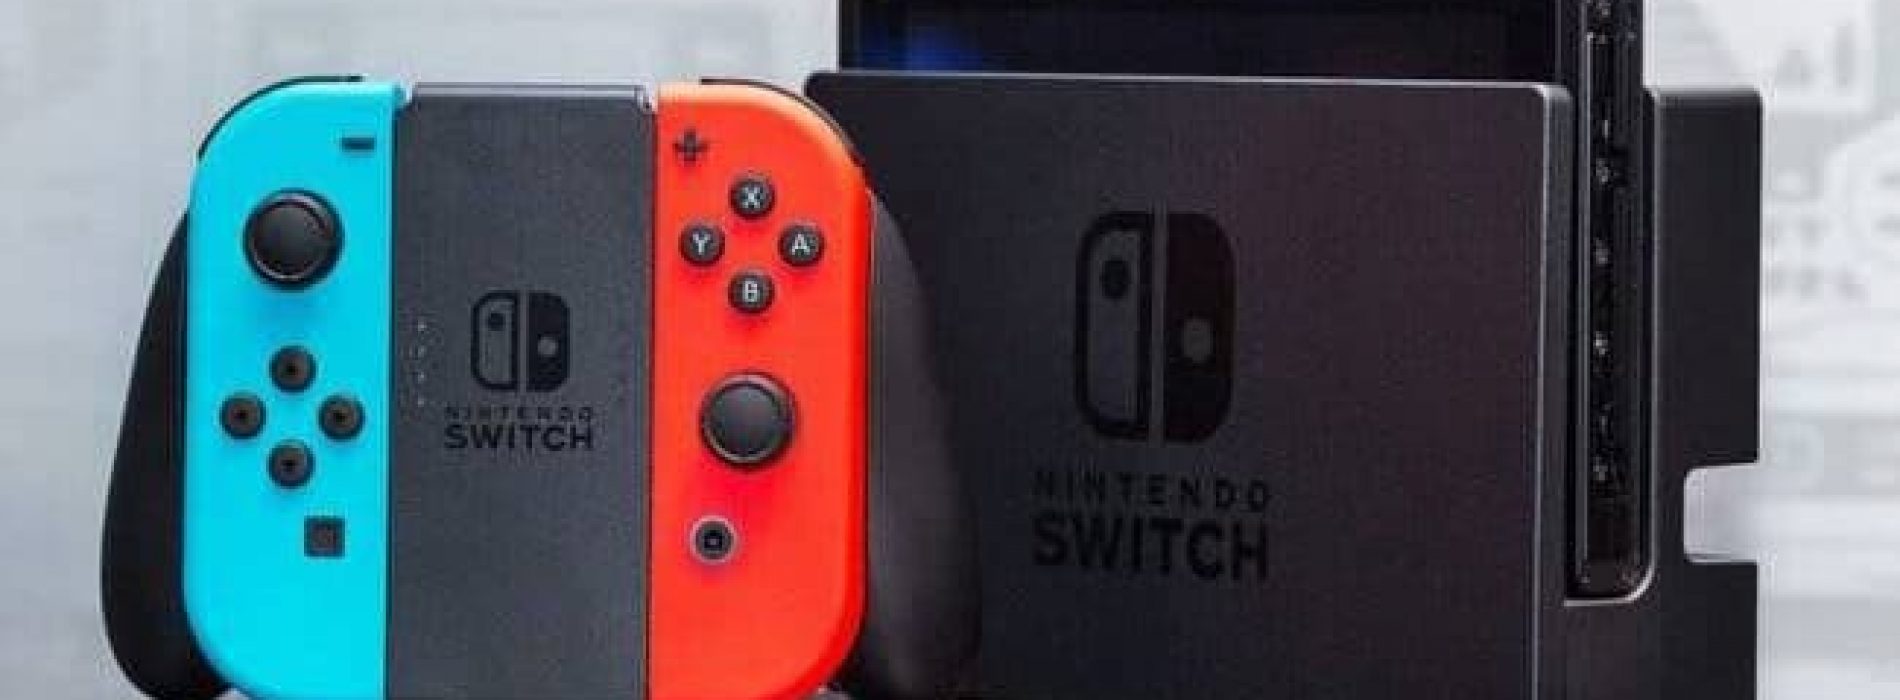 Nintendo Switch está vendiendo a un ritmo mayor que PS4 y PS2